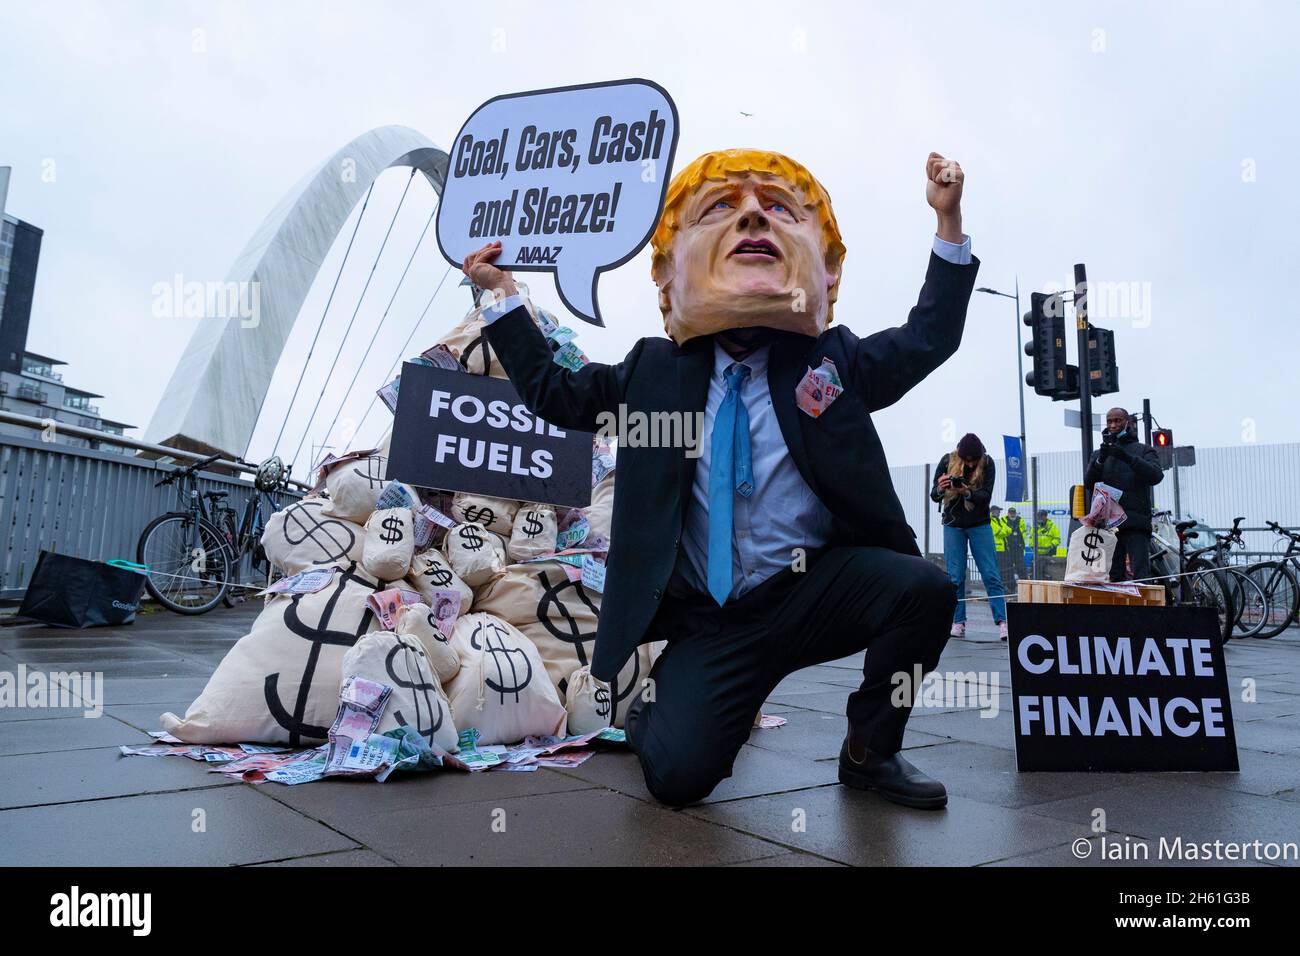 Glasgow, Schottland, Großbritannien. November 2021. Tag dreizehn und letzter Tag des UN-Klimagipfels COP26 in Glasgow. Boris Johnson Bildnis steht neben Säcken mit Geld, das bei einem Protest vor dem Veranstaltungsort der COP26 aus der Gewinnung fossiler Brennstoffe gewonnen wurde. Der Protest wurde von Avaaz organisiert, einer US-Wohltätigkeitsorganisation, die sich für den globalen Aktivismus im Klimawandel einsetzt. Iain Masterton/Alamy Live News. Stockfoto